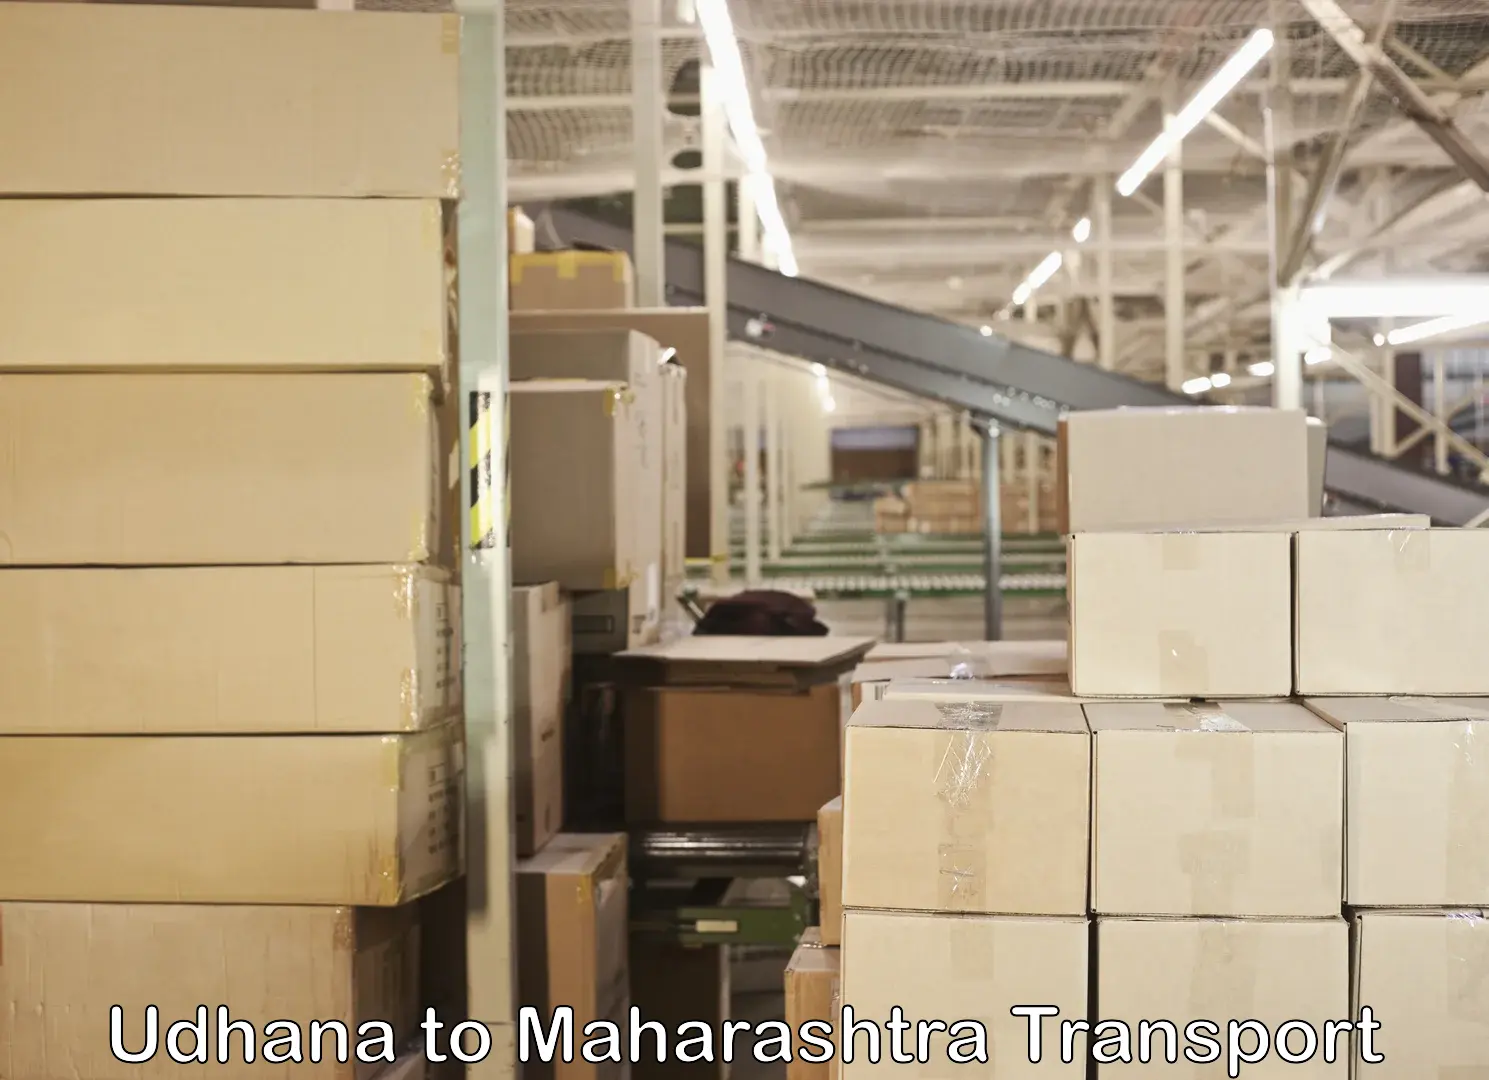 Cargo train transport services Udhana to Maharashtra